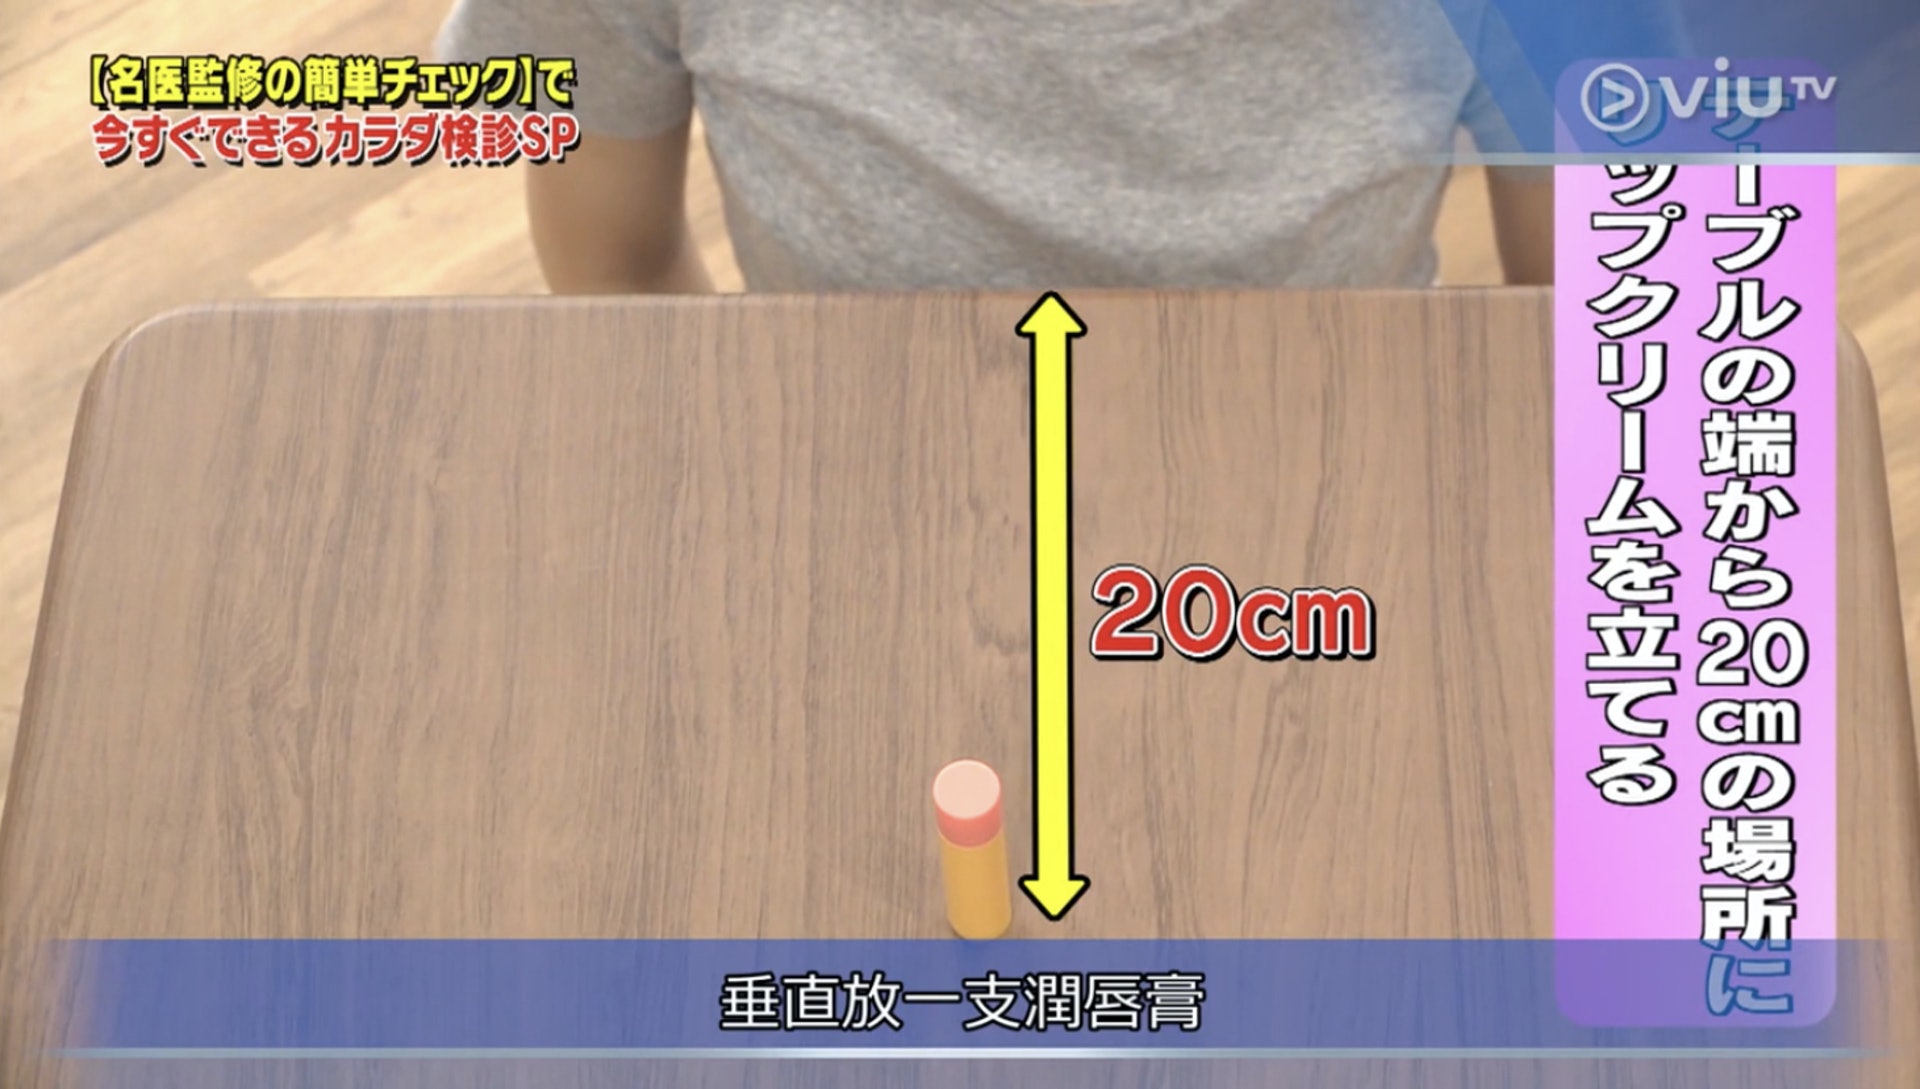 把在潤唇膏放在由桌子邊緣開始算起20厘米外的位置（Viu TV《恐怖醫學》影片截圖）